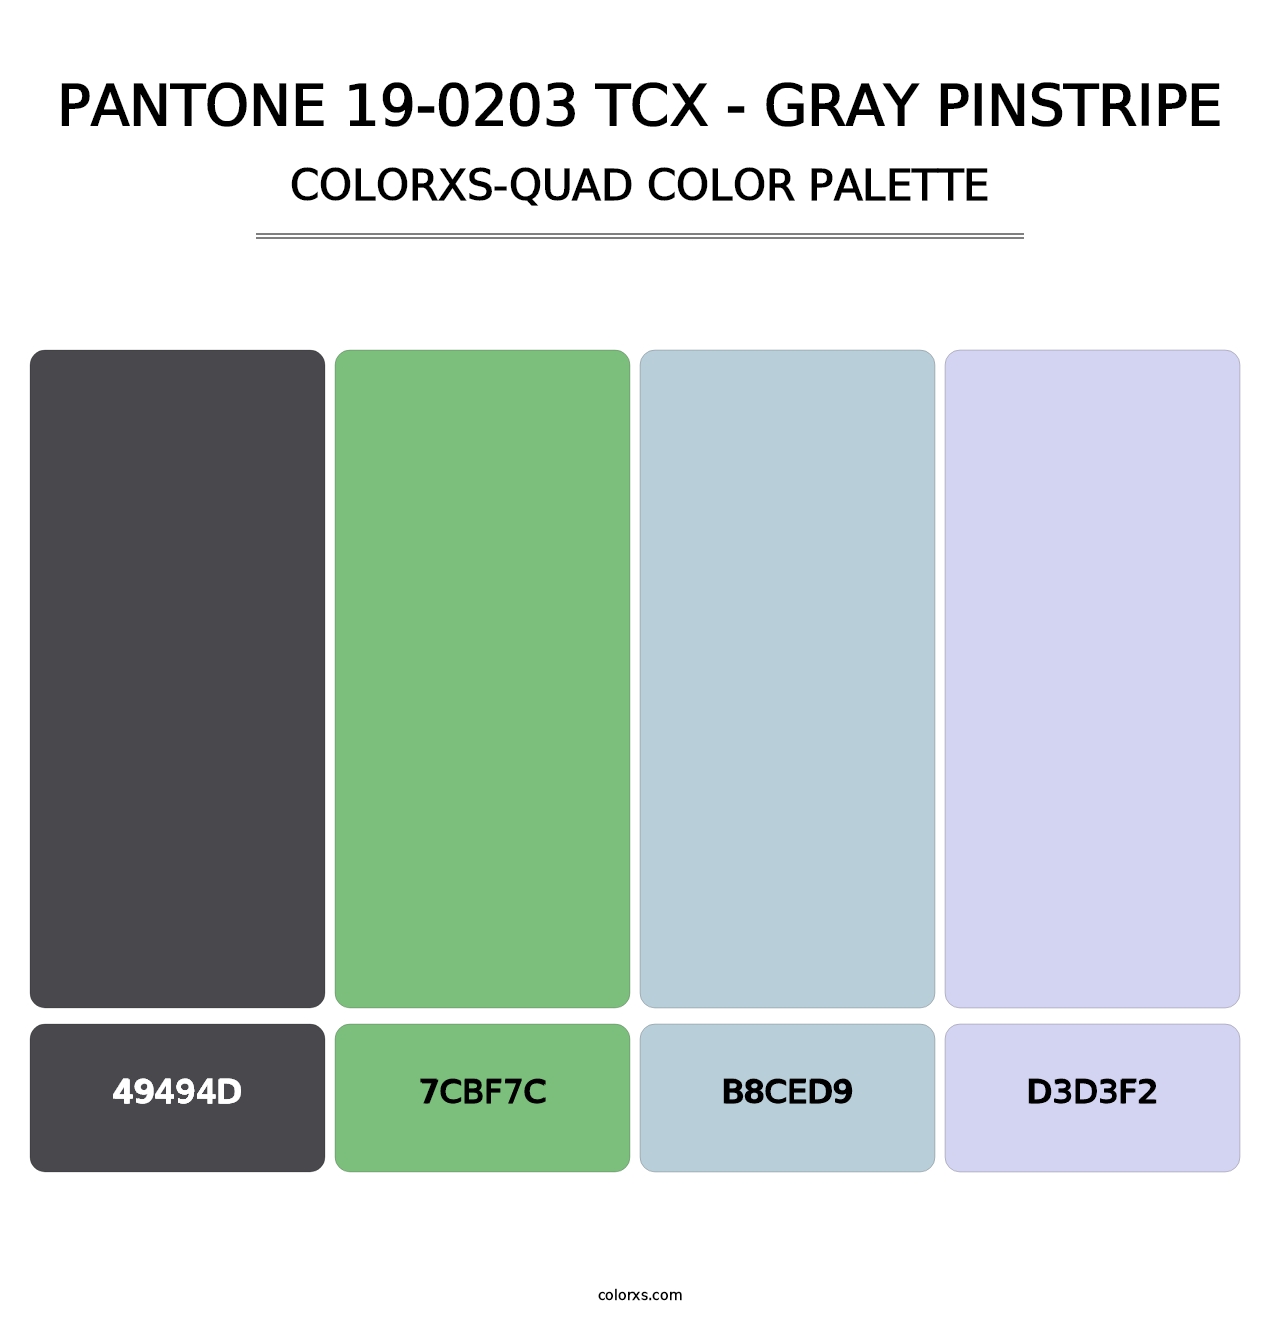 PANTONE 19-0203 TCX - Gray Pinstripe - Colorxs Quad Palette